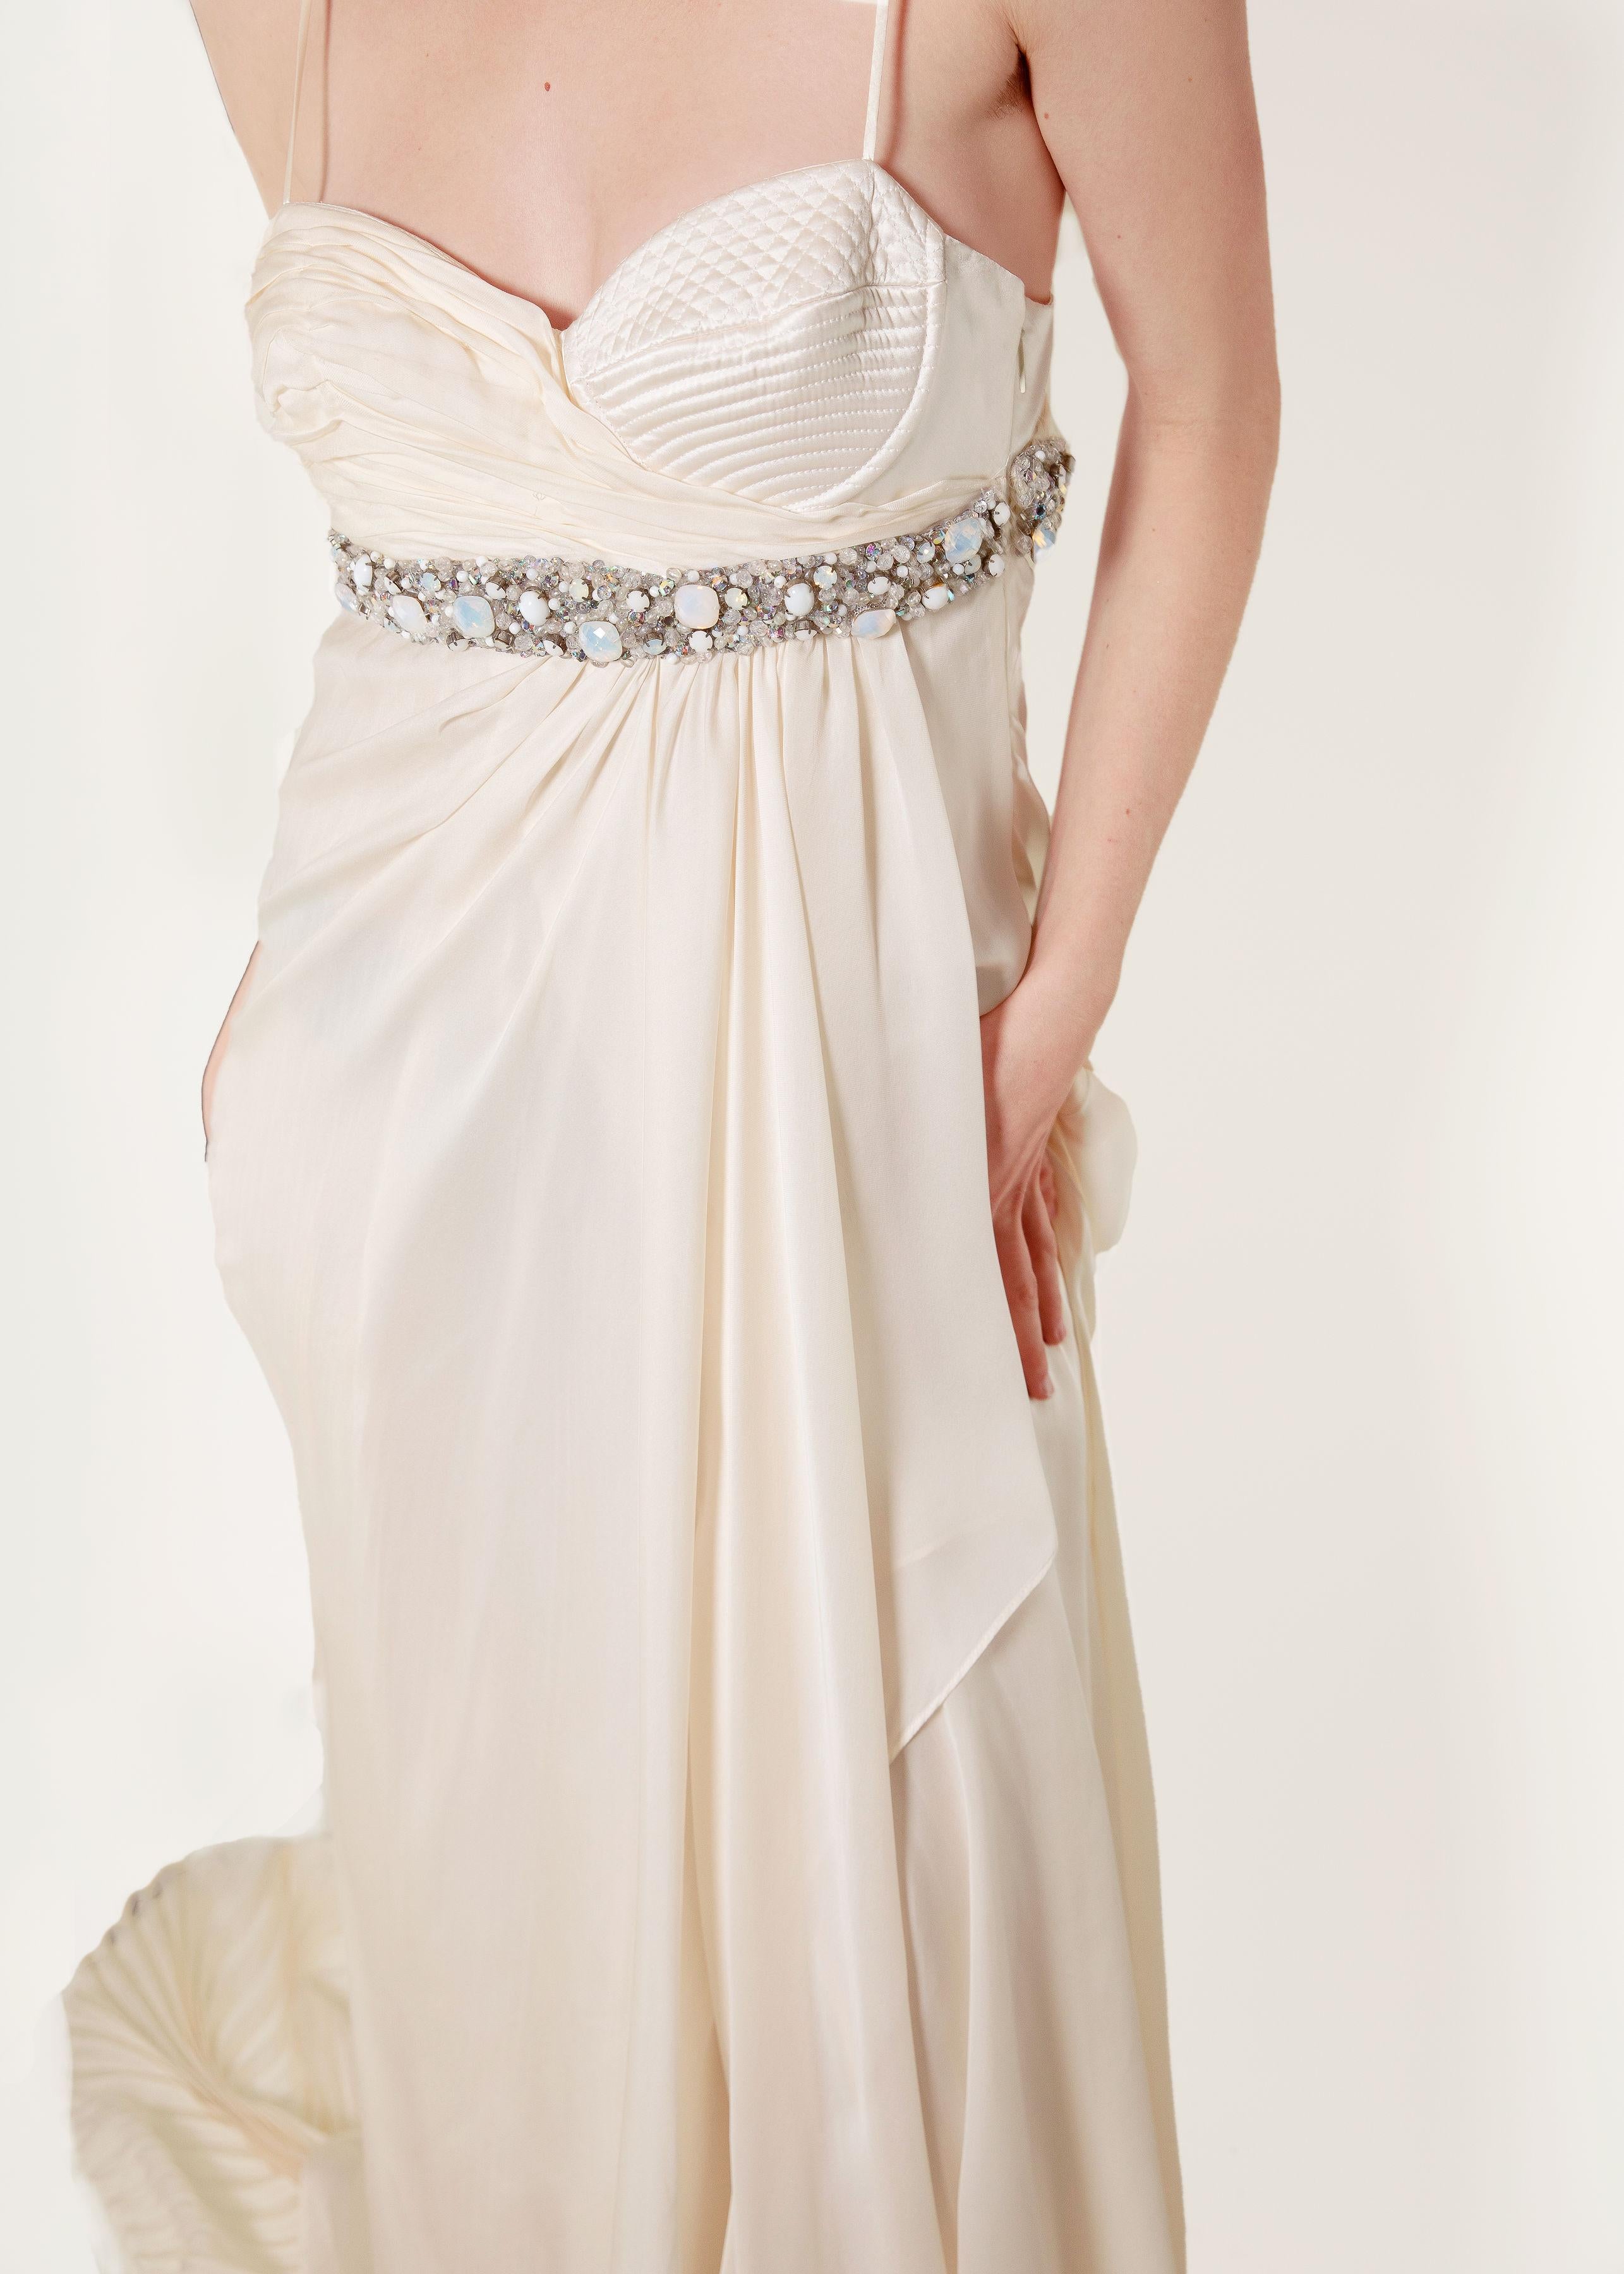 Dieses weiße Abendkleid von Roberto Cavalli für den Herbst 2005 ist aus luxuriöser Seide gefertigt und zeichnet sich durch funkelnde, mit Kristallen besetzte Perlen, Lagen von plissiertem Stoff und zarte Träger aus. Der Glamour, der Luxus und der